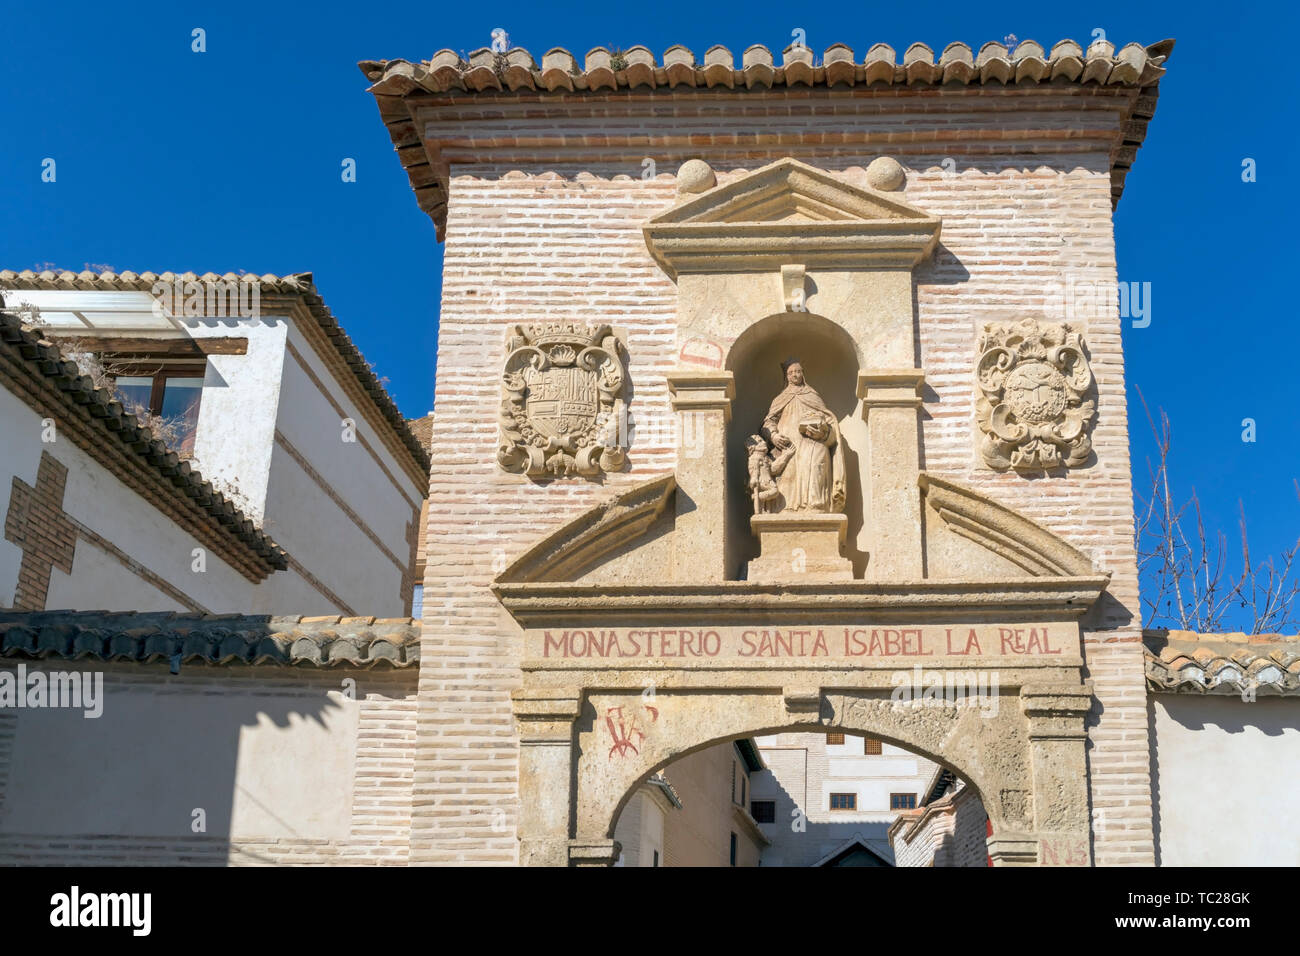 Ingresso al Monasterio di Santa Isabel la Real nella Albayzin, Granada, provincia di Granada, Andalusia, Spagna meridionale. La Alhambra e Generalife e Albay Foto Stock